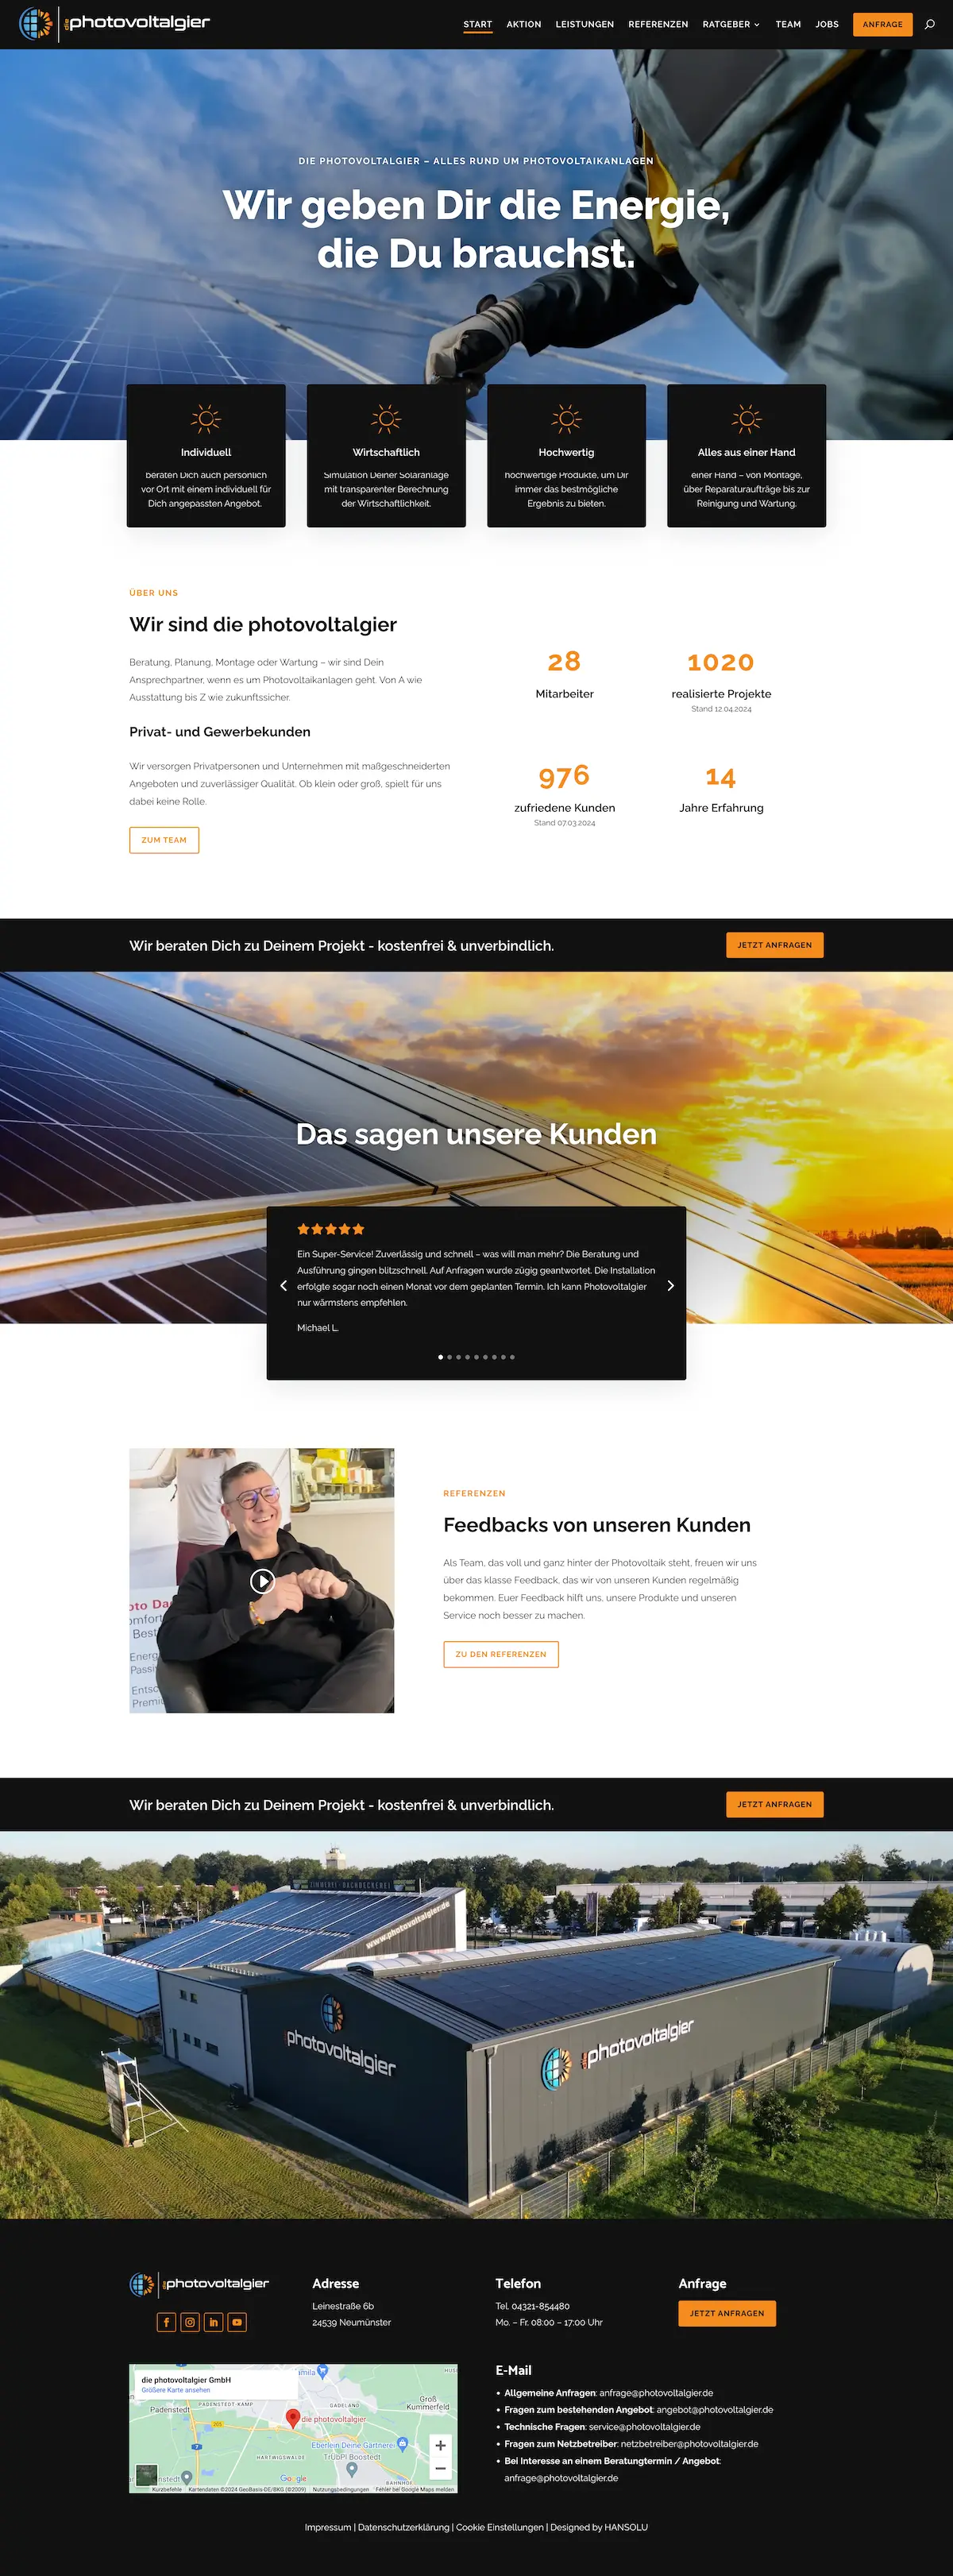 Bildschirmfoto der Startseite der neuen Website von photovoltagier